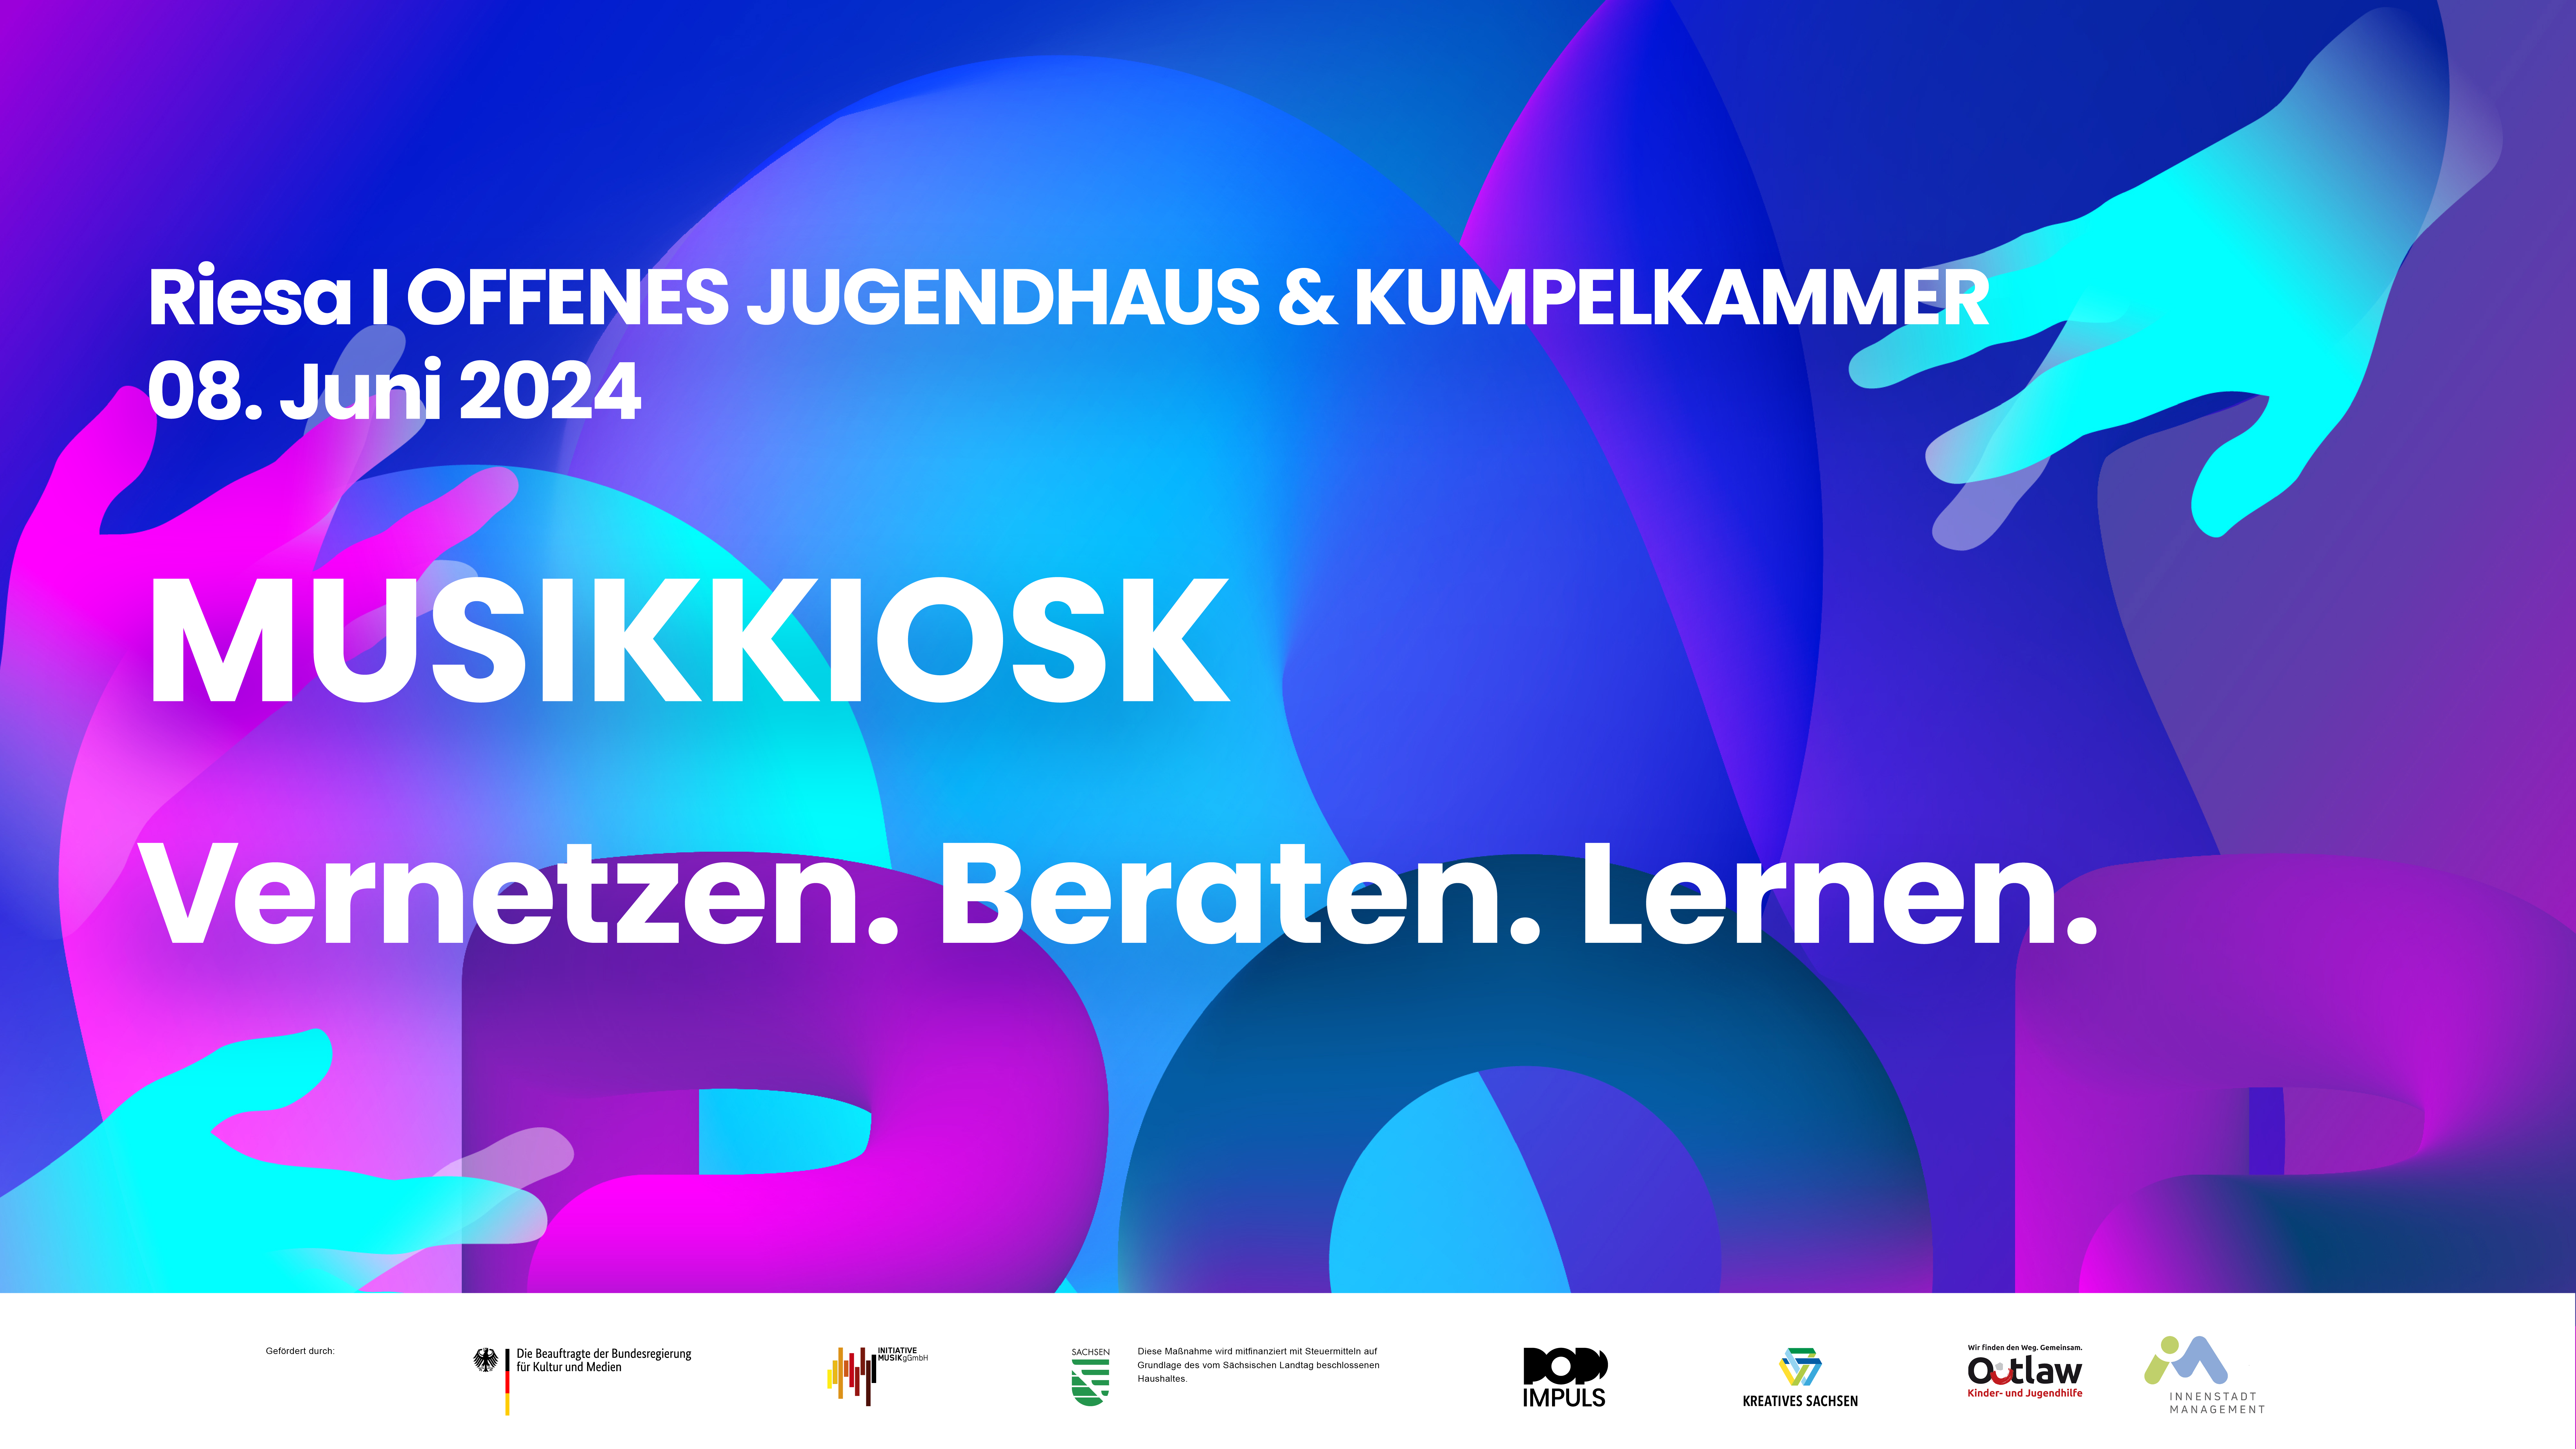 Titelbild Veranstaltung Musikkiosk mit Datum 8. Juni 2024 in Riesa